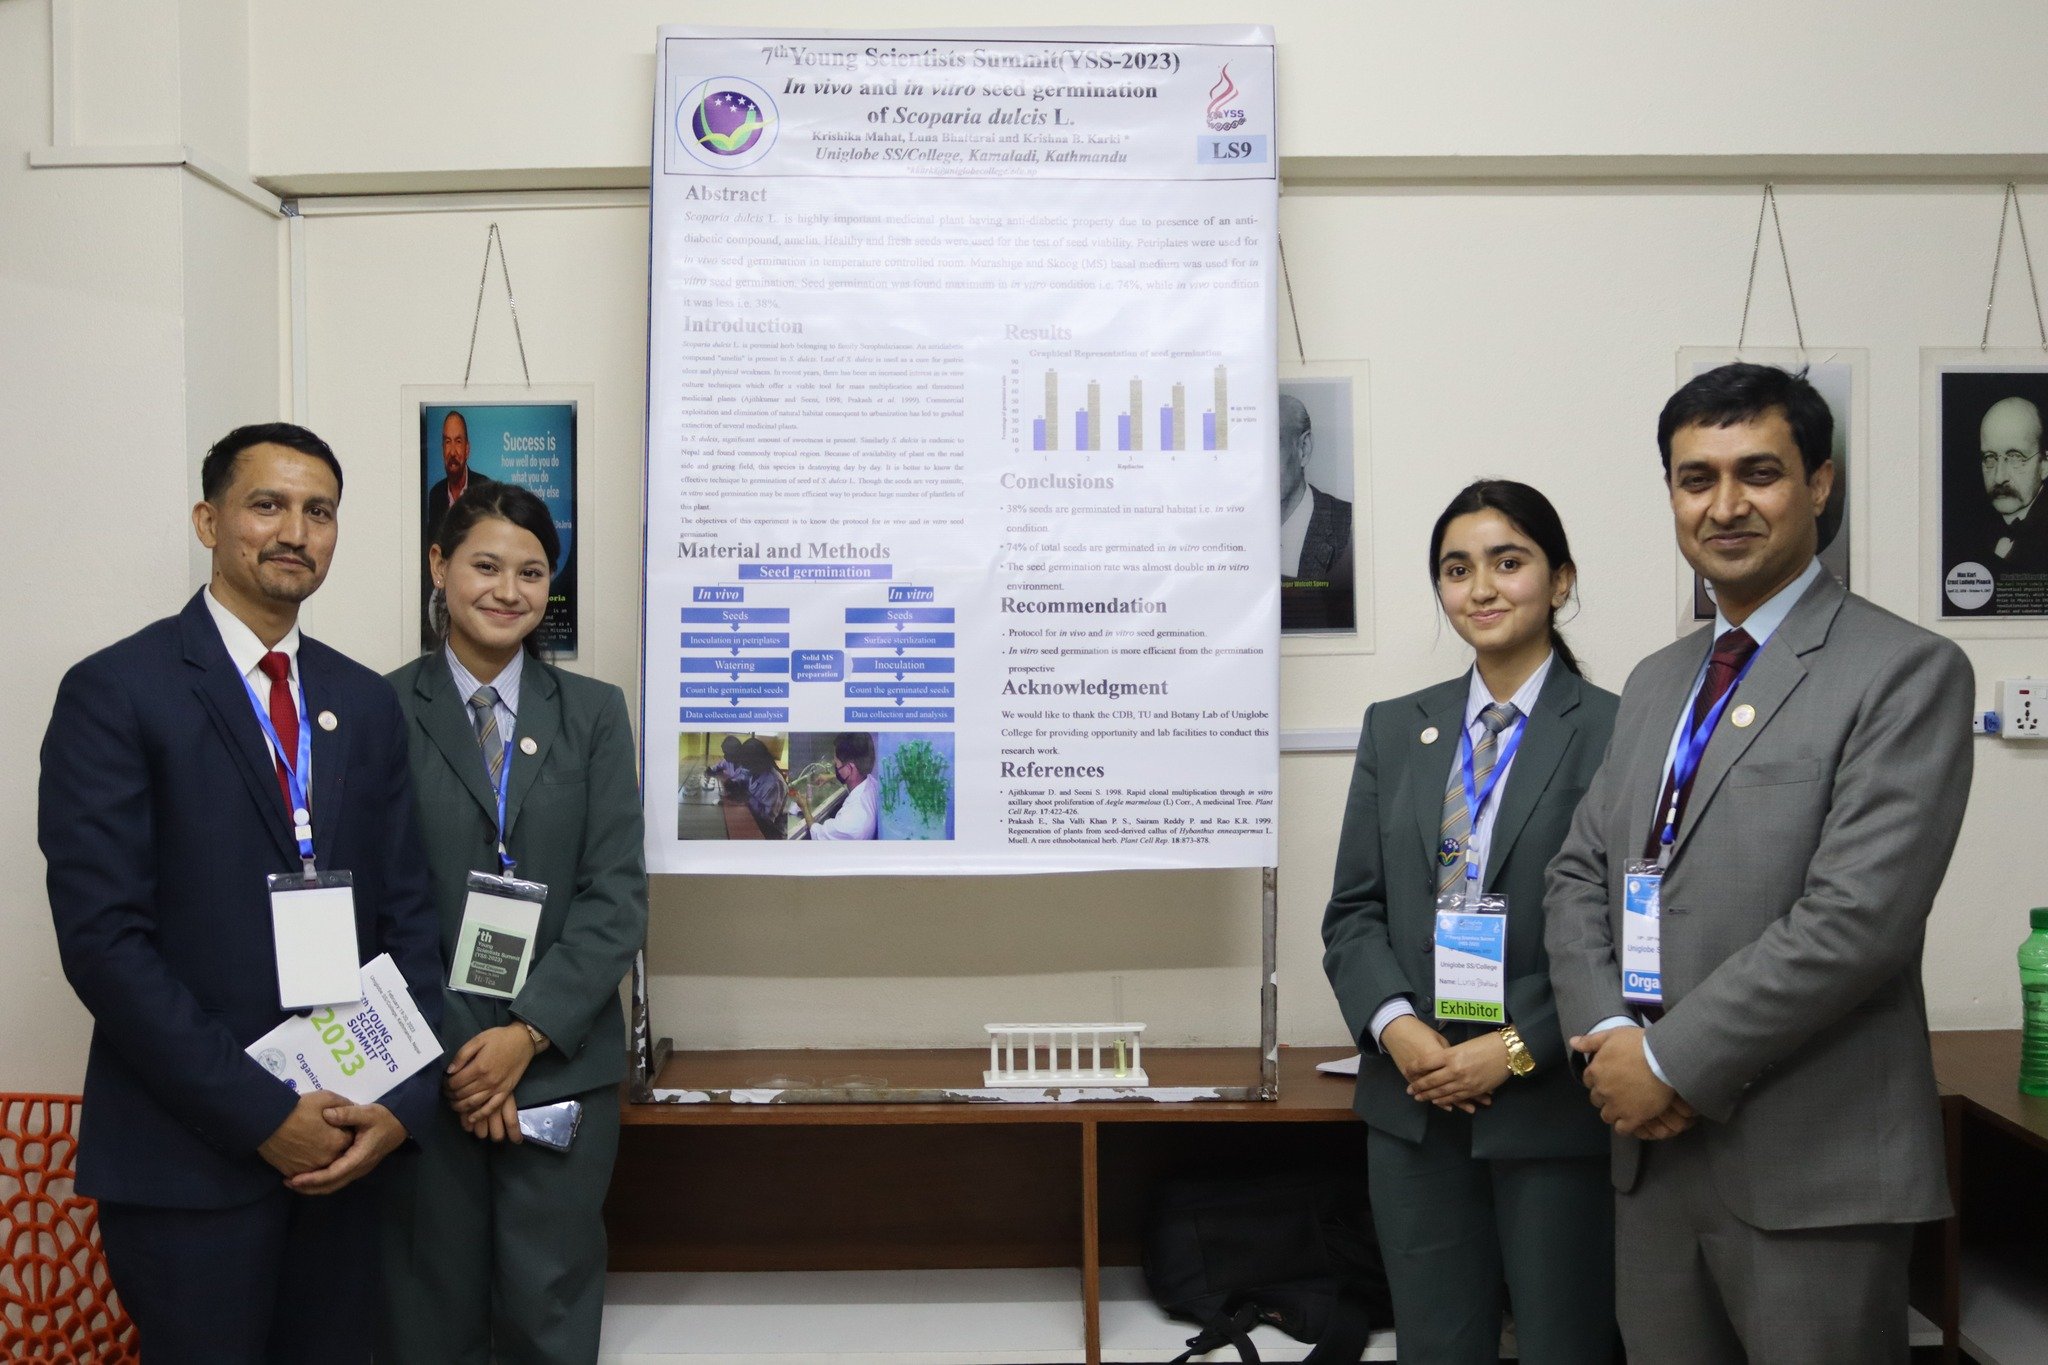 सातौँ युवा वैज्ञानिक शिखर सम्मेलन, ५६ वटा अनुसन्धान प्रोजेक्टबीच प्रतिस्पर्धा